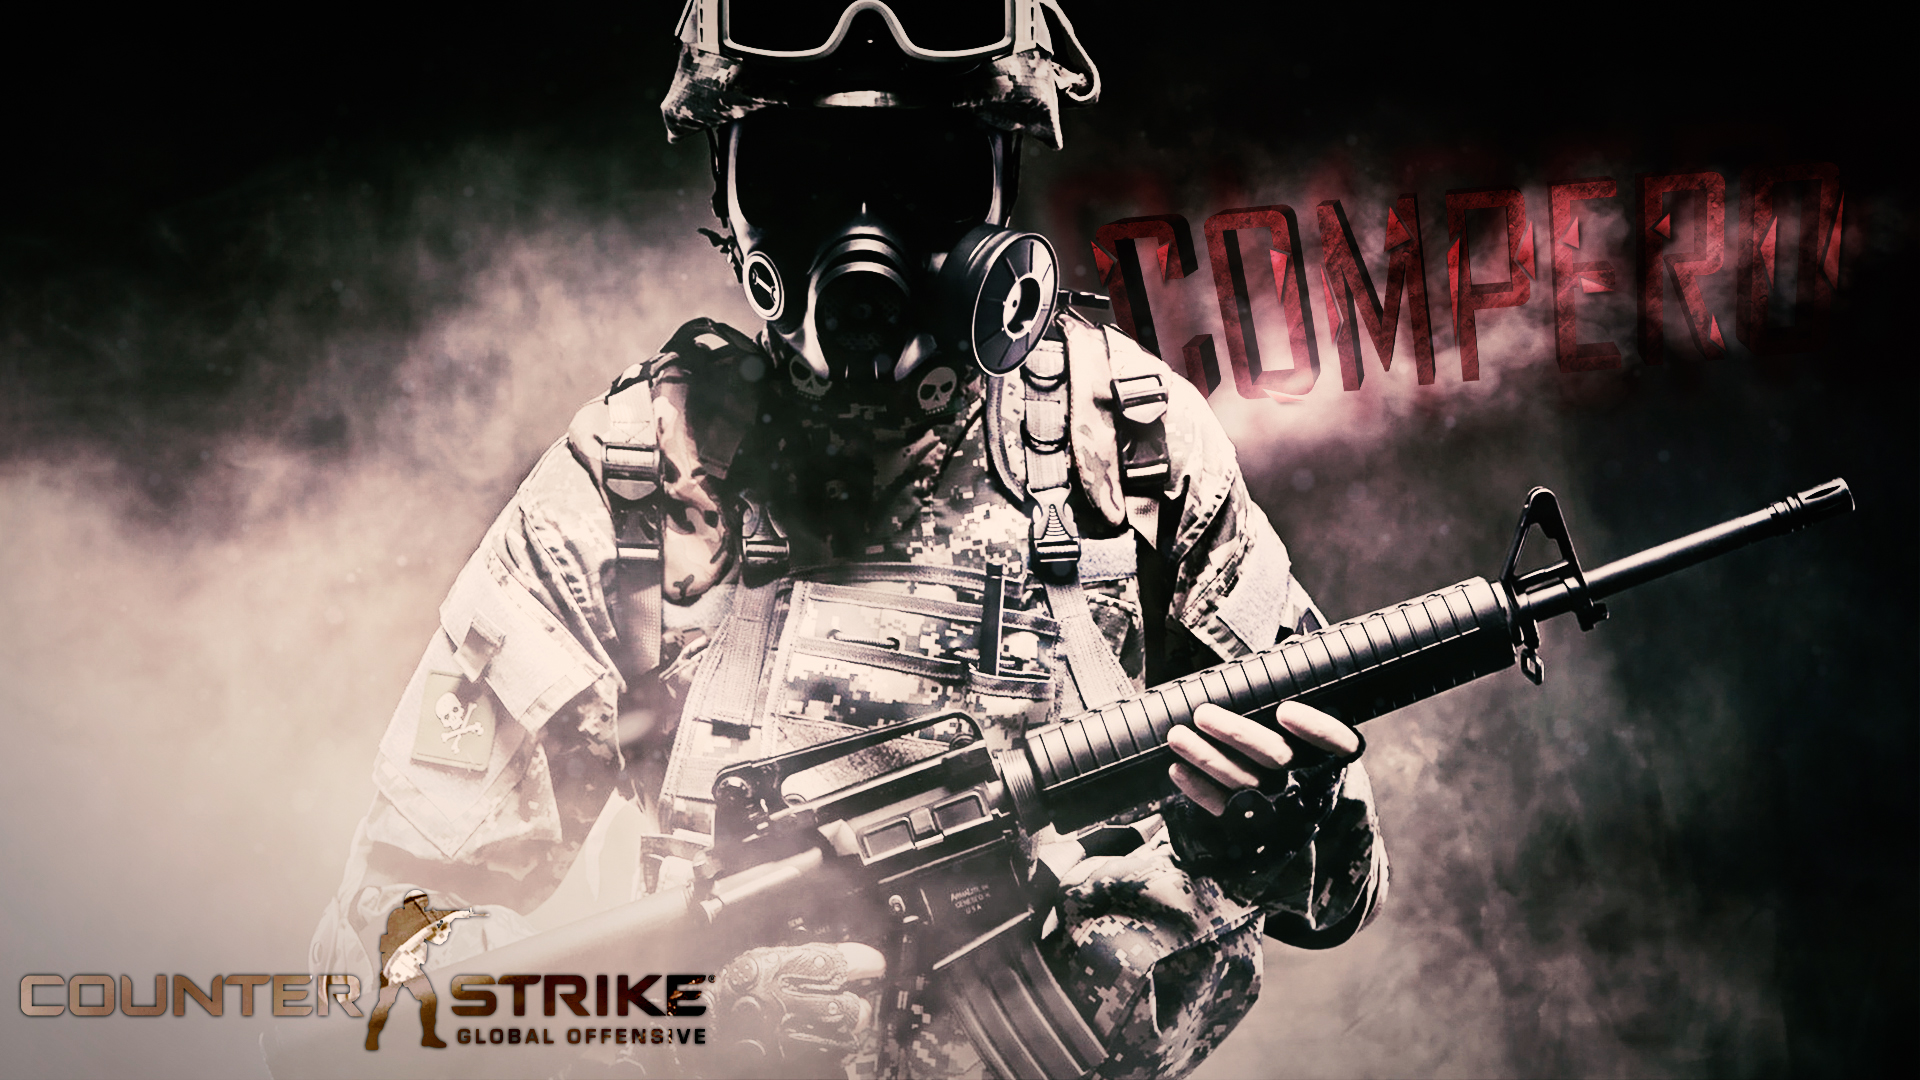 Hd Wallpaper Counter Strike Global Offensive - 1920x1080 Wallpaper -  